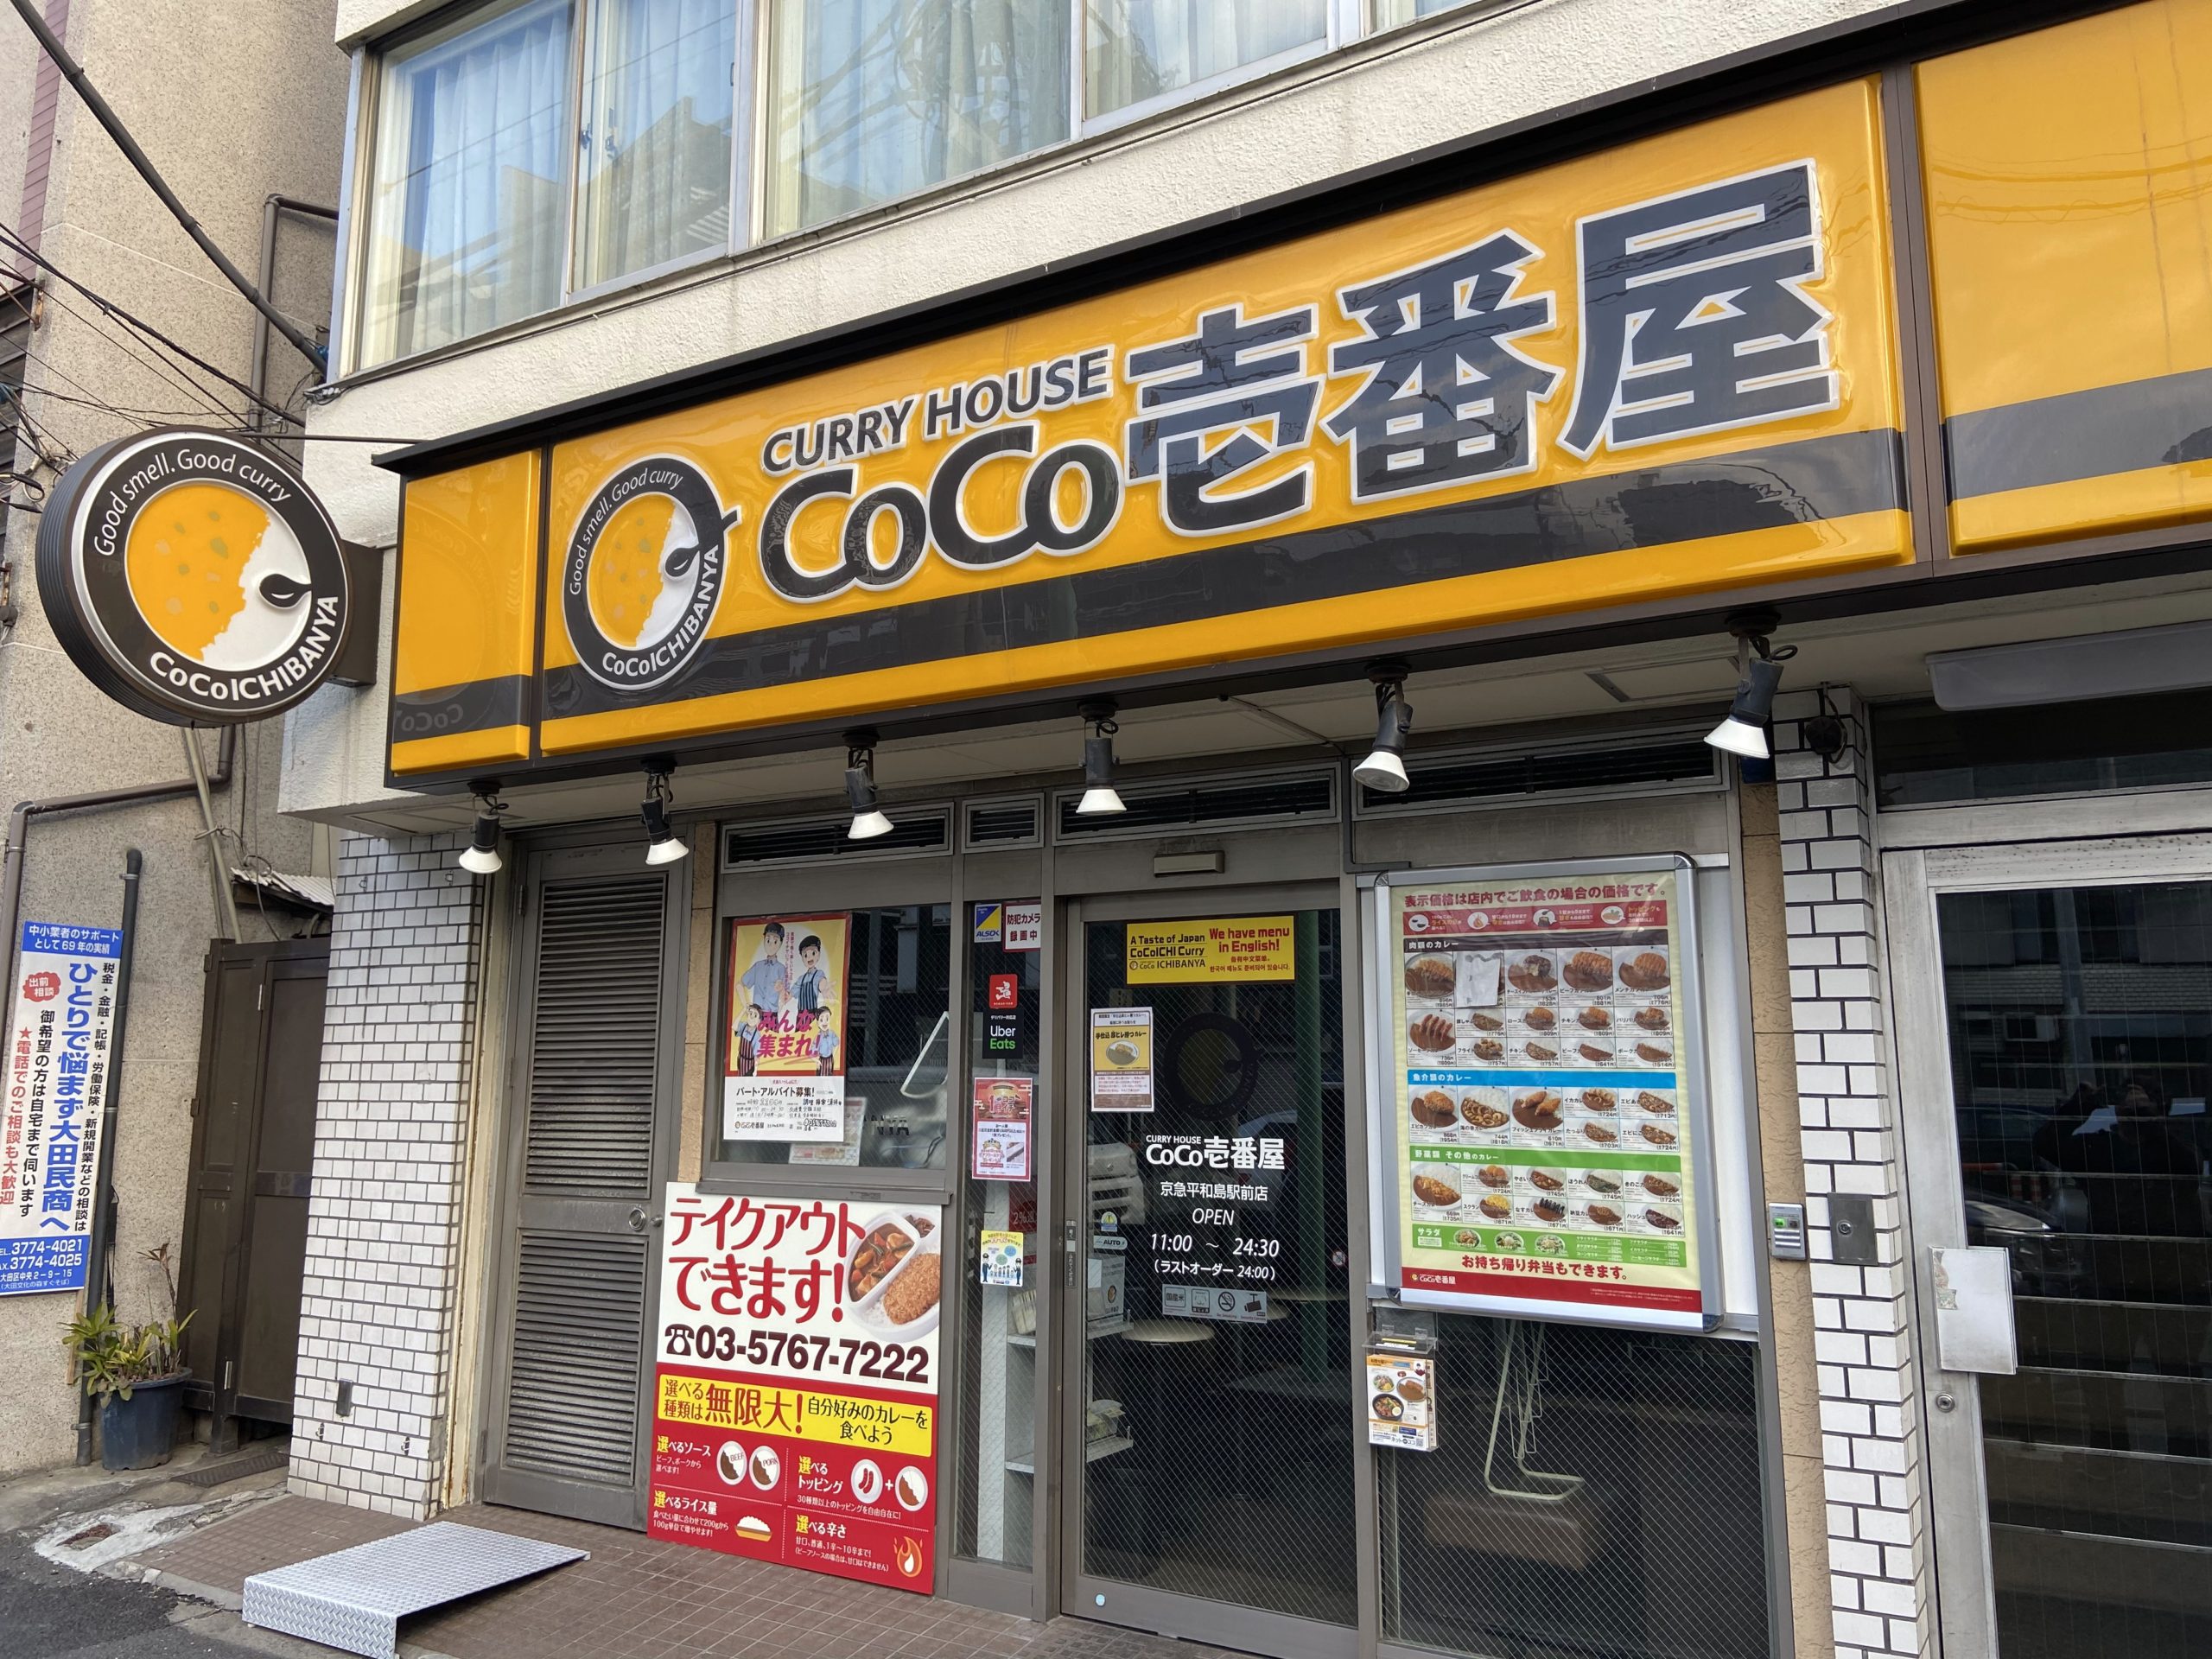 カレーハウスCoCo壱番屋 京急平和島駅前店